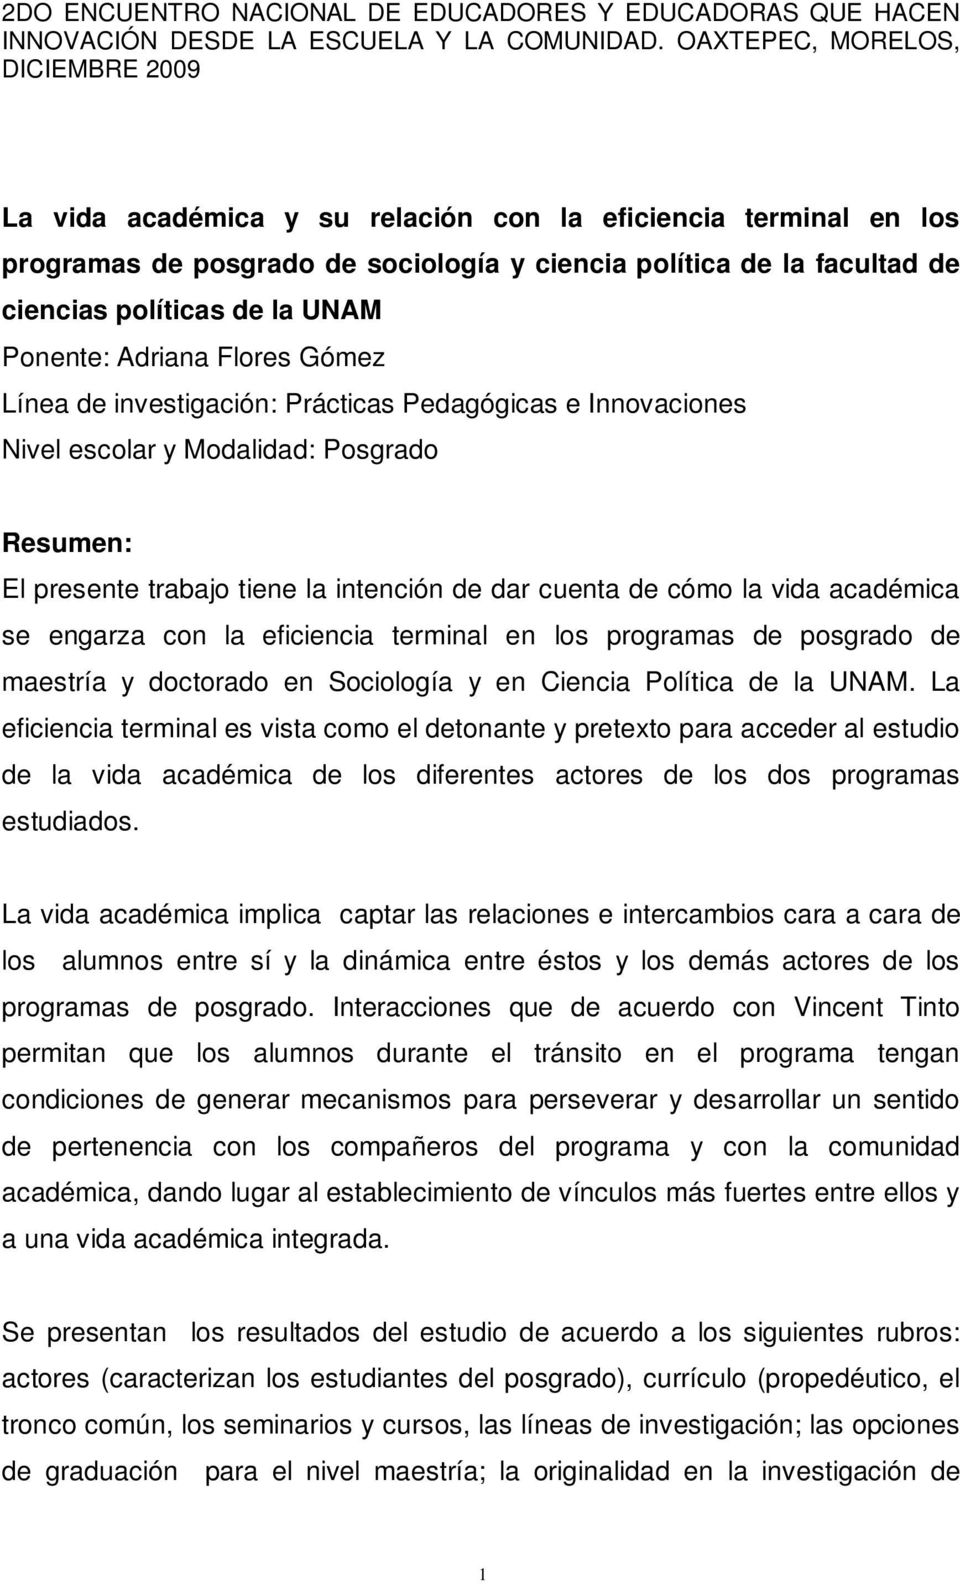 la eficiencia terminal en los programas de posgrado de maestría y doctorado en Sociología y en Ciencia Política de la UNAM.